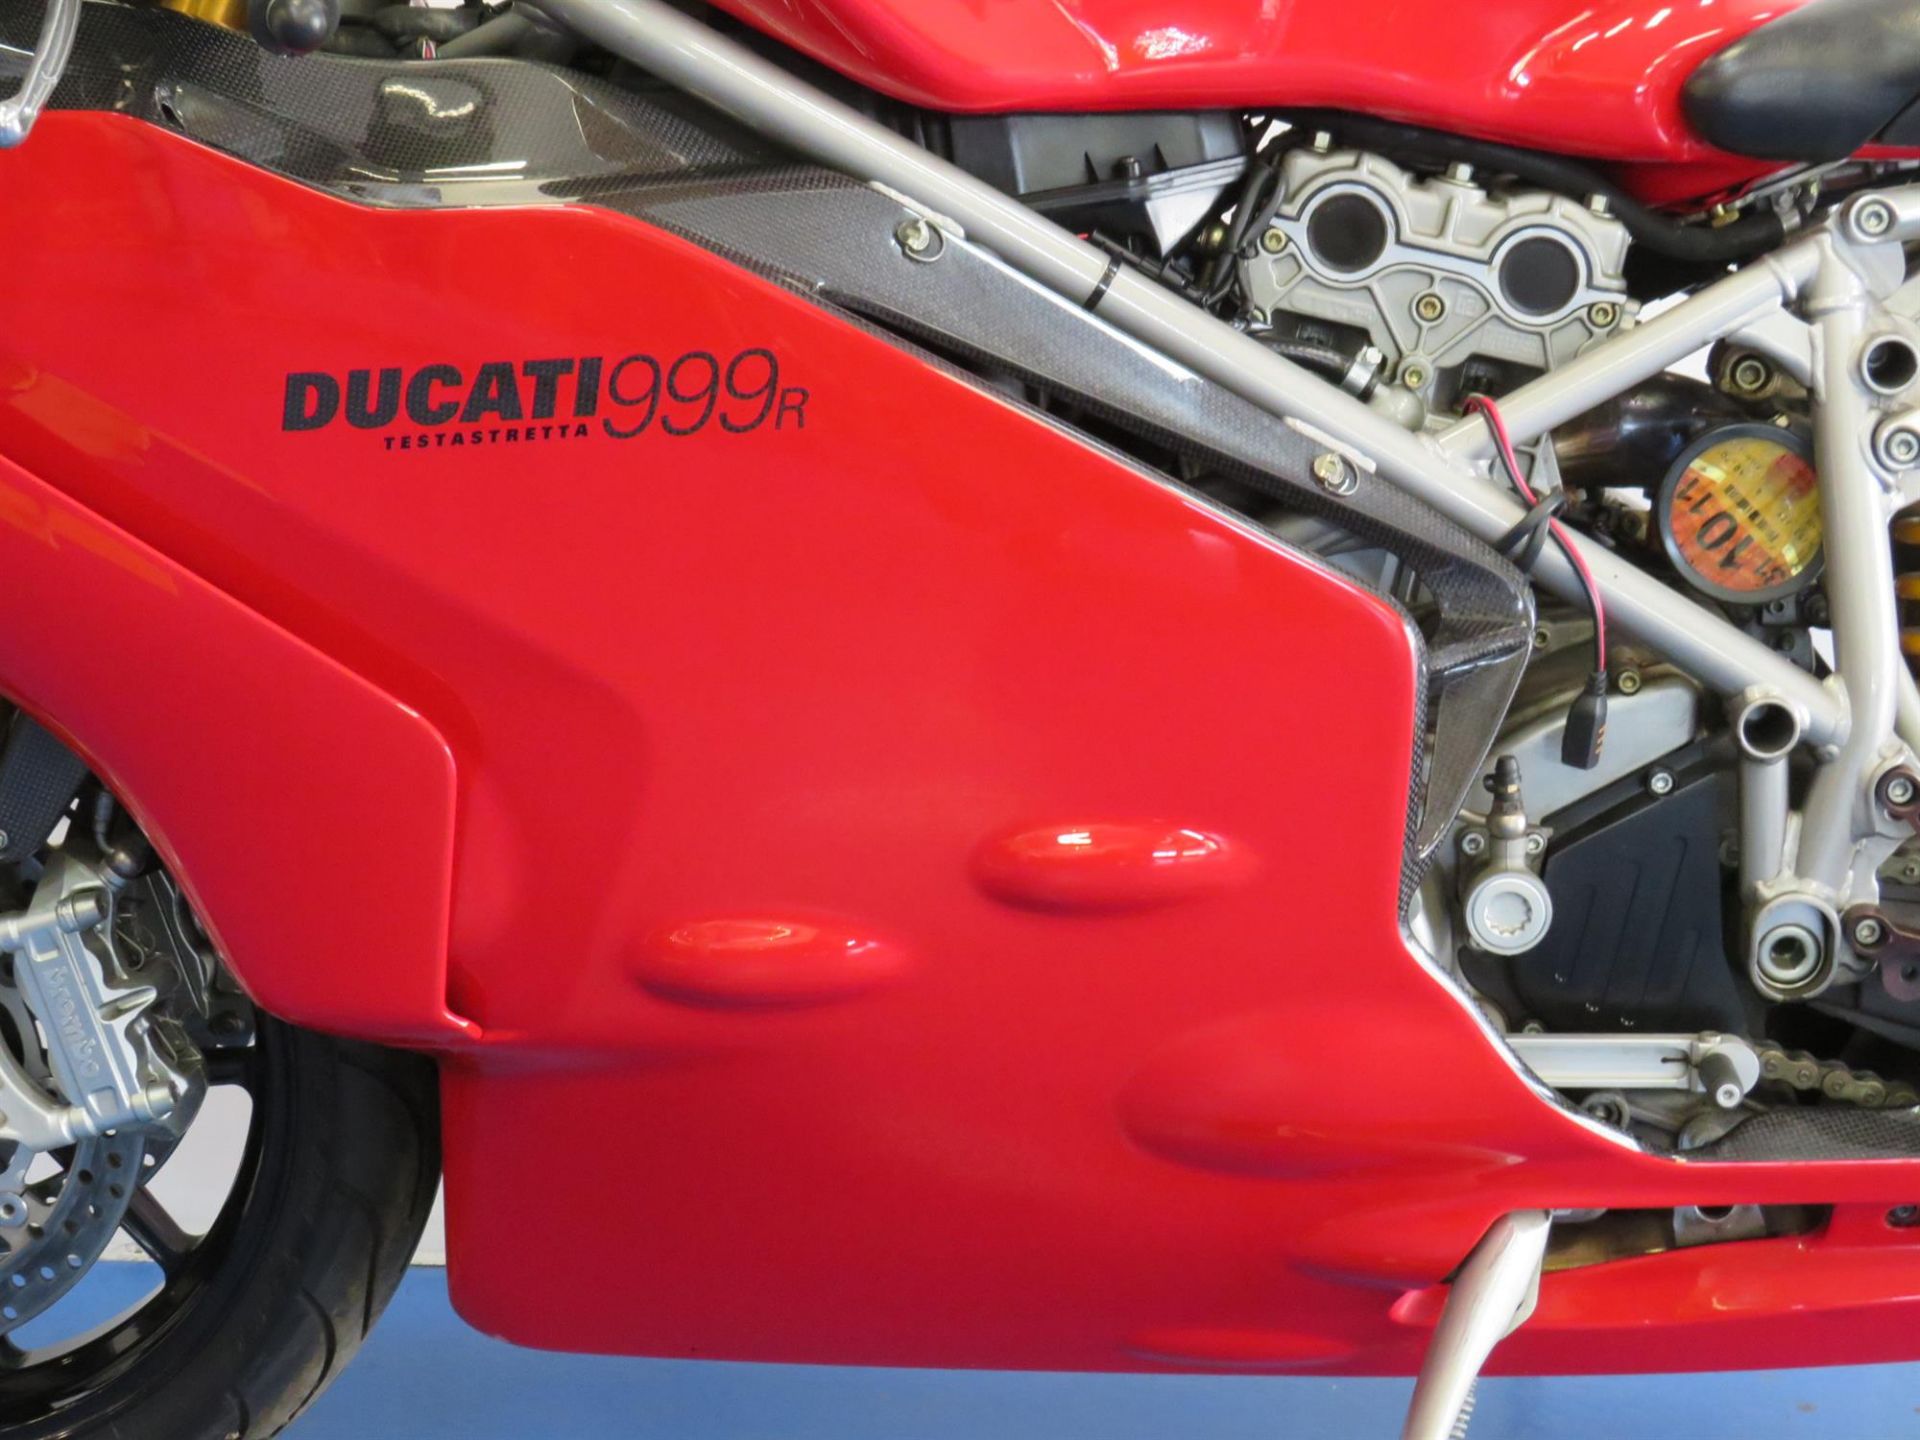 2003 Ducati 999R 999cc - Bild 4 aus 10